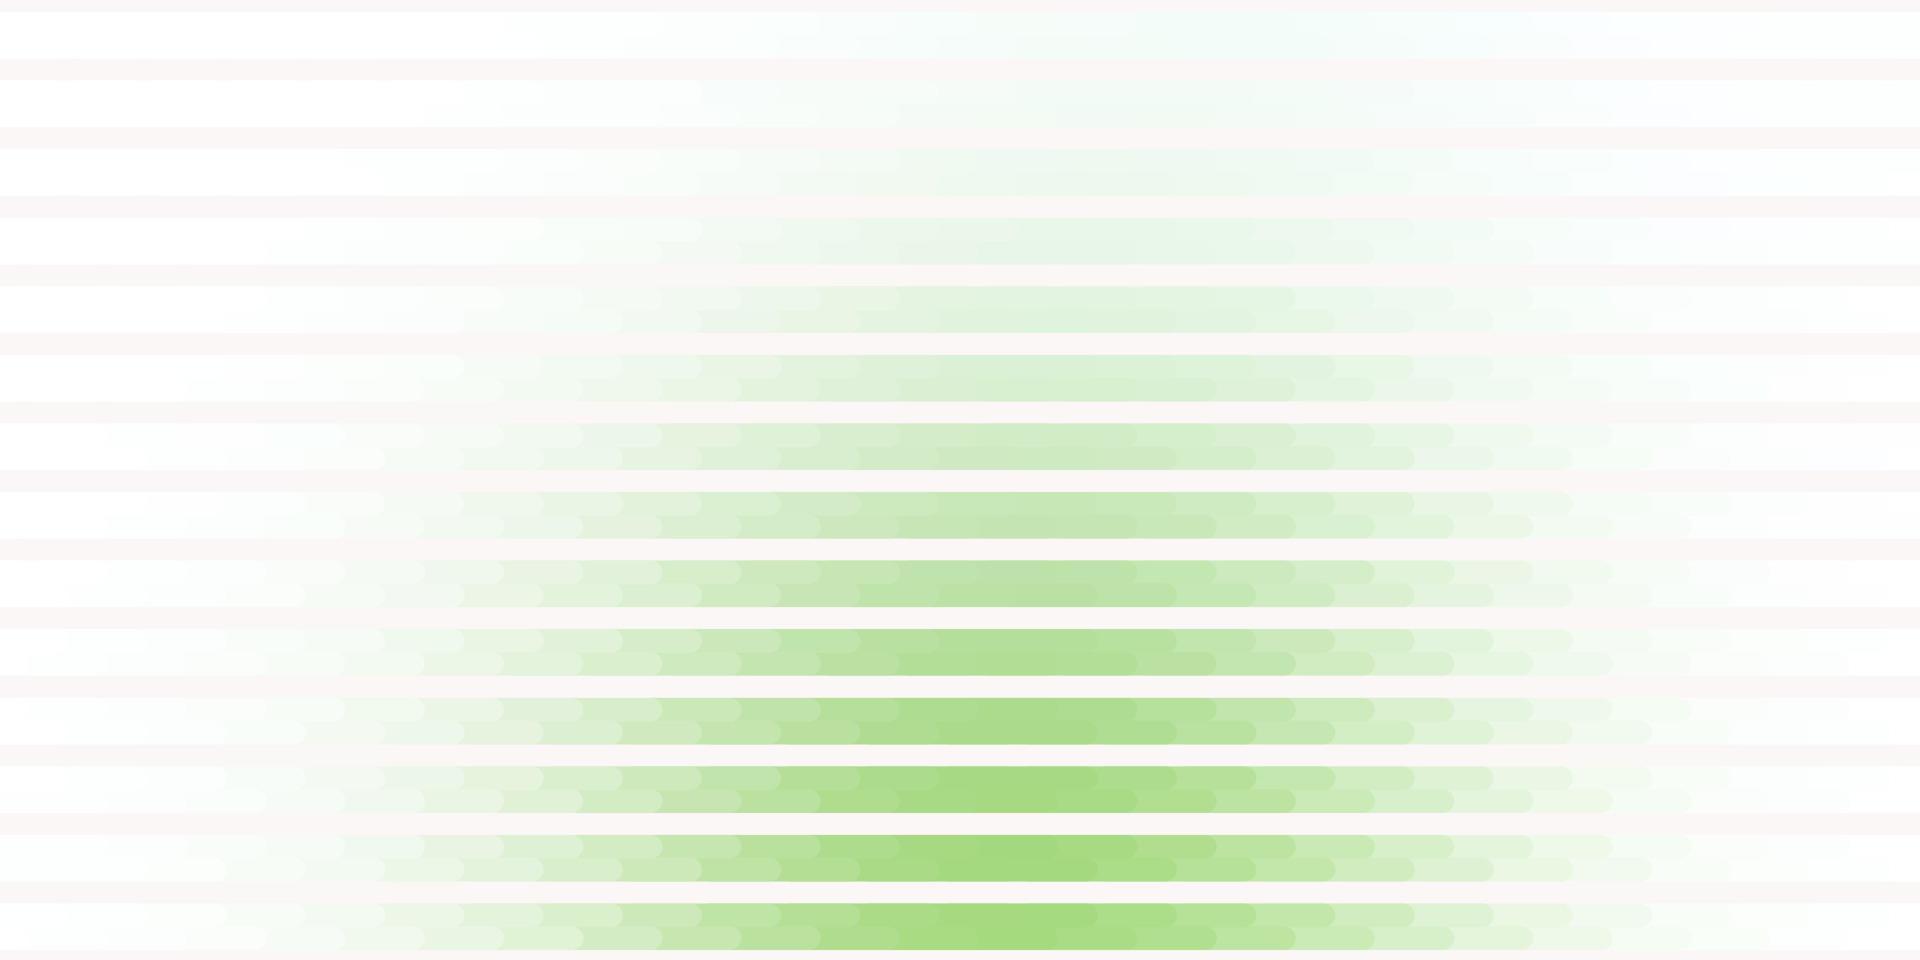 layout de vetor verde claro com linhas.